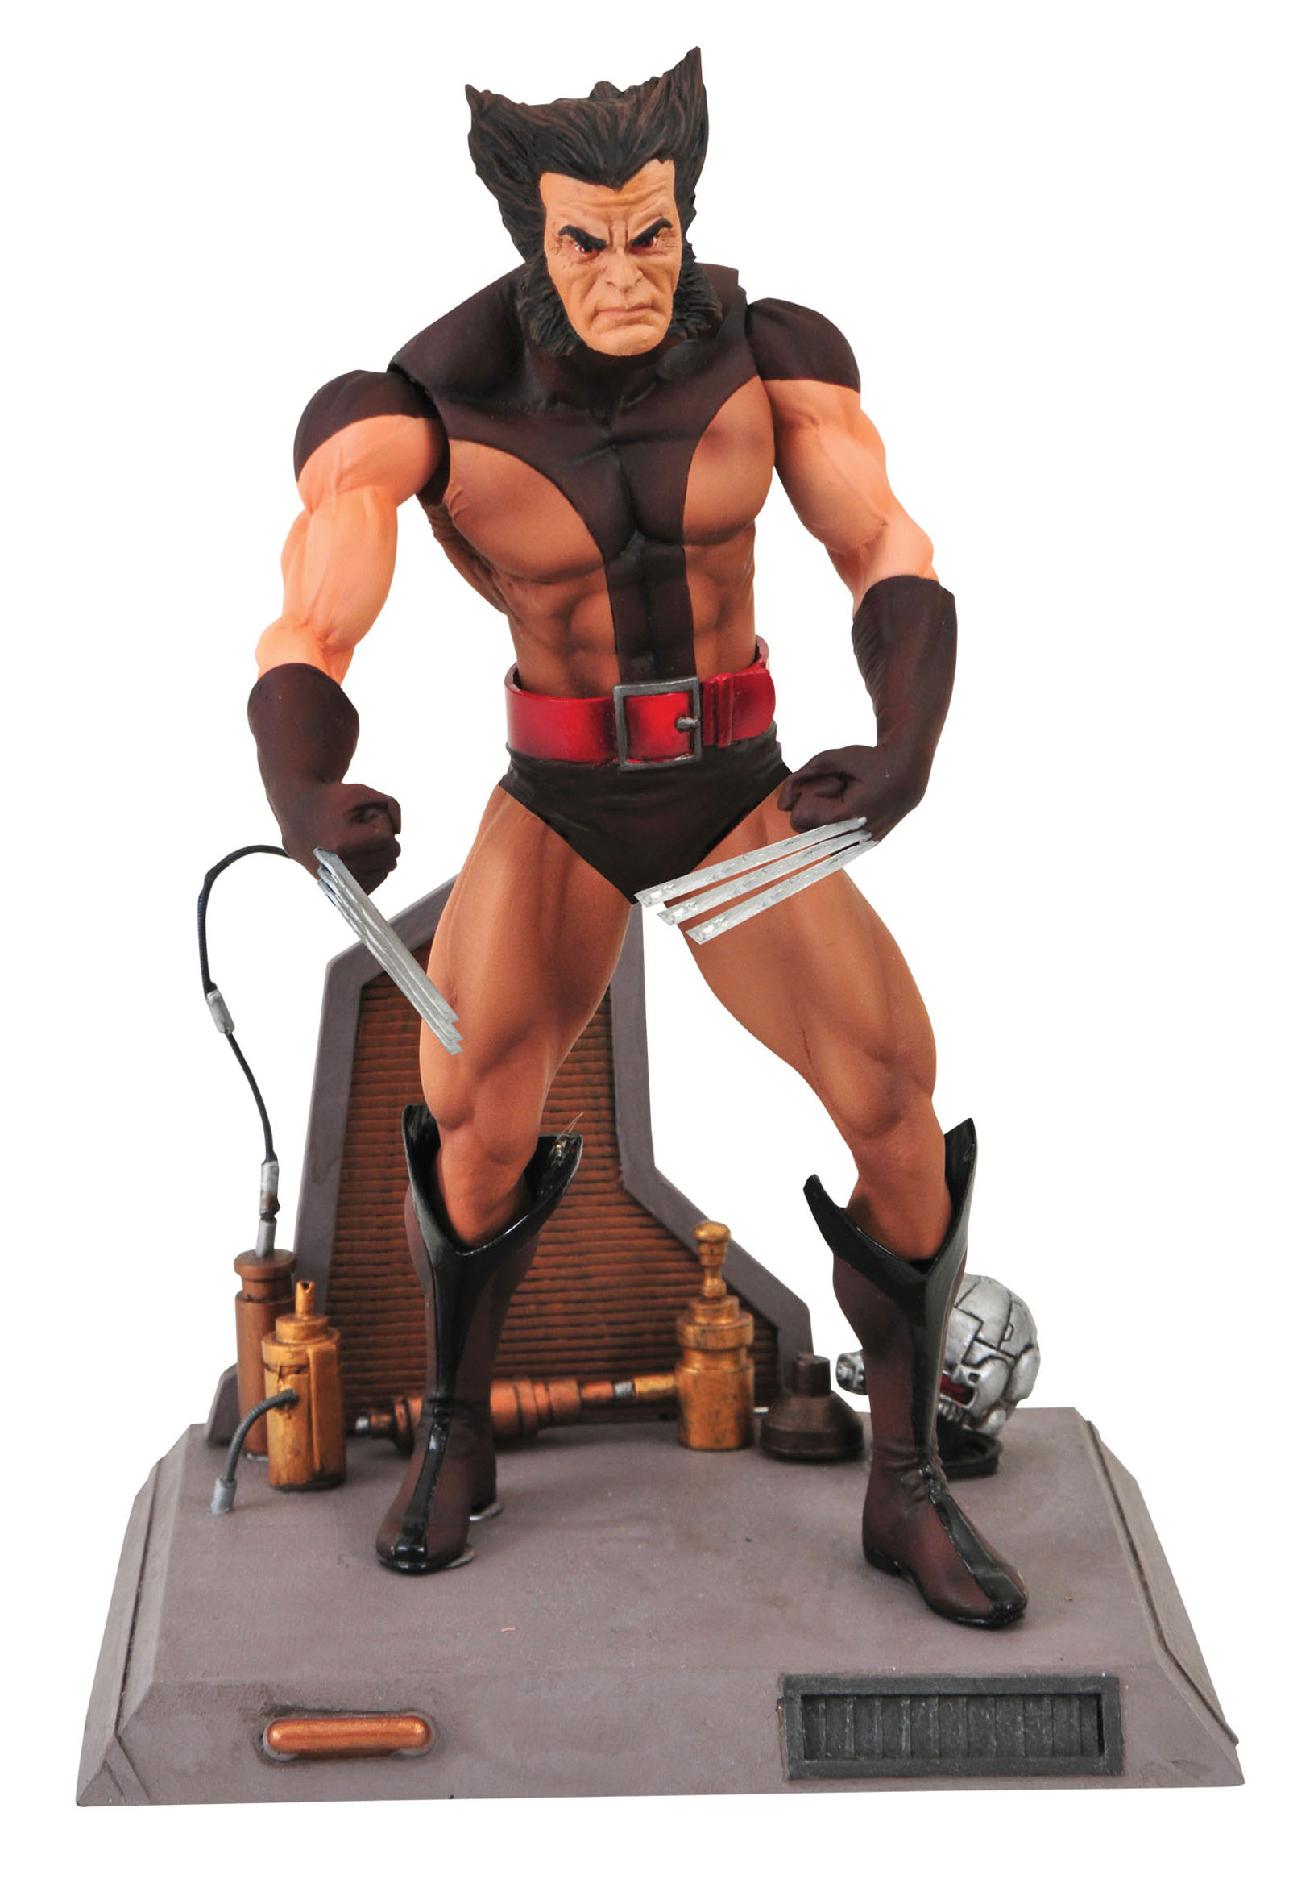 Marvel Select Unmasked Wolverine Figure